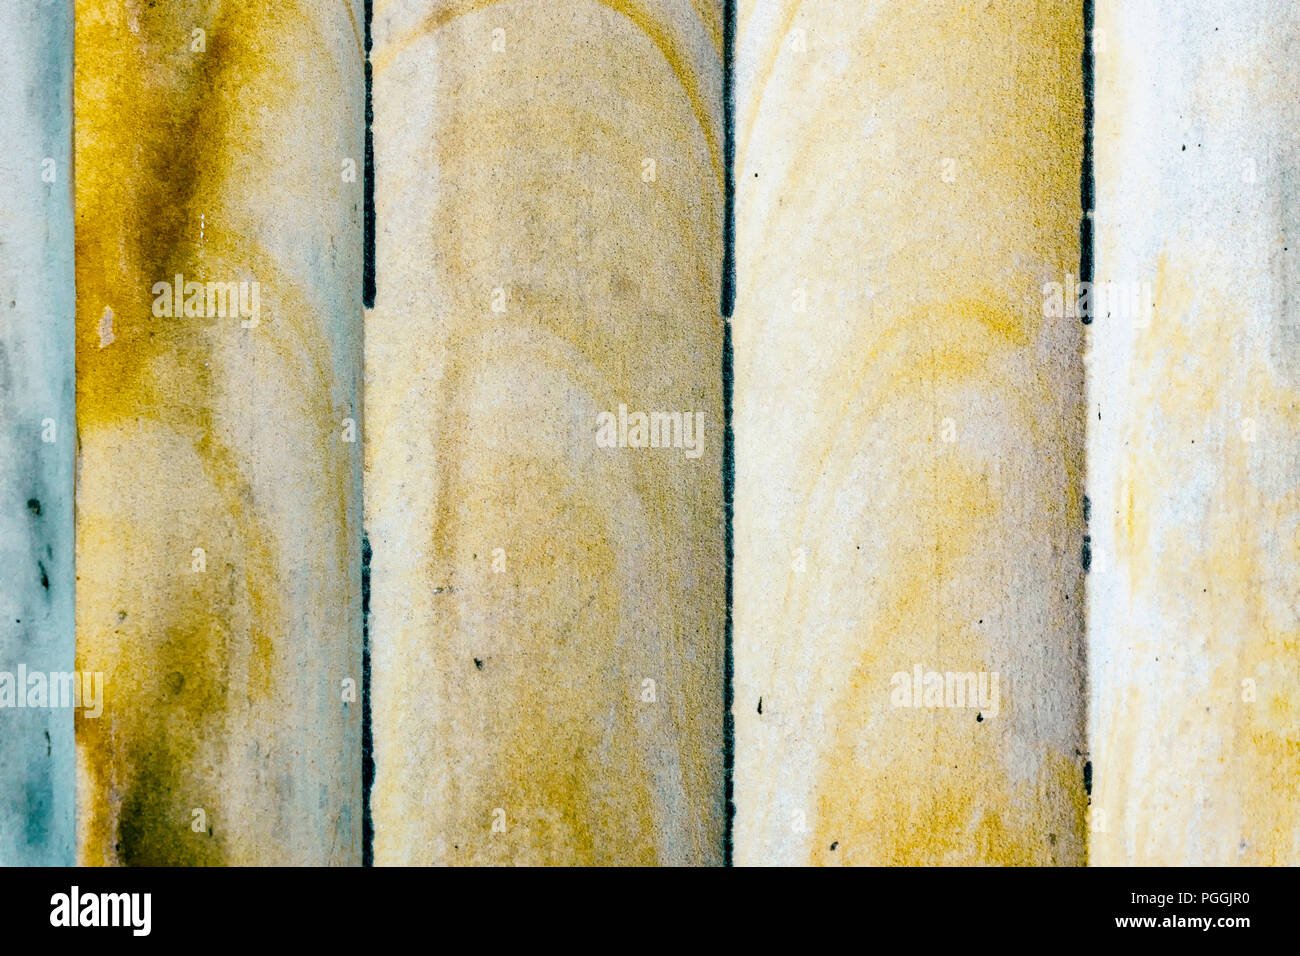 Berlino, Germania, 11 agosto 2018: Full Frame Close-Up delle scanalature di colonna Foto Stock